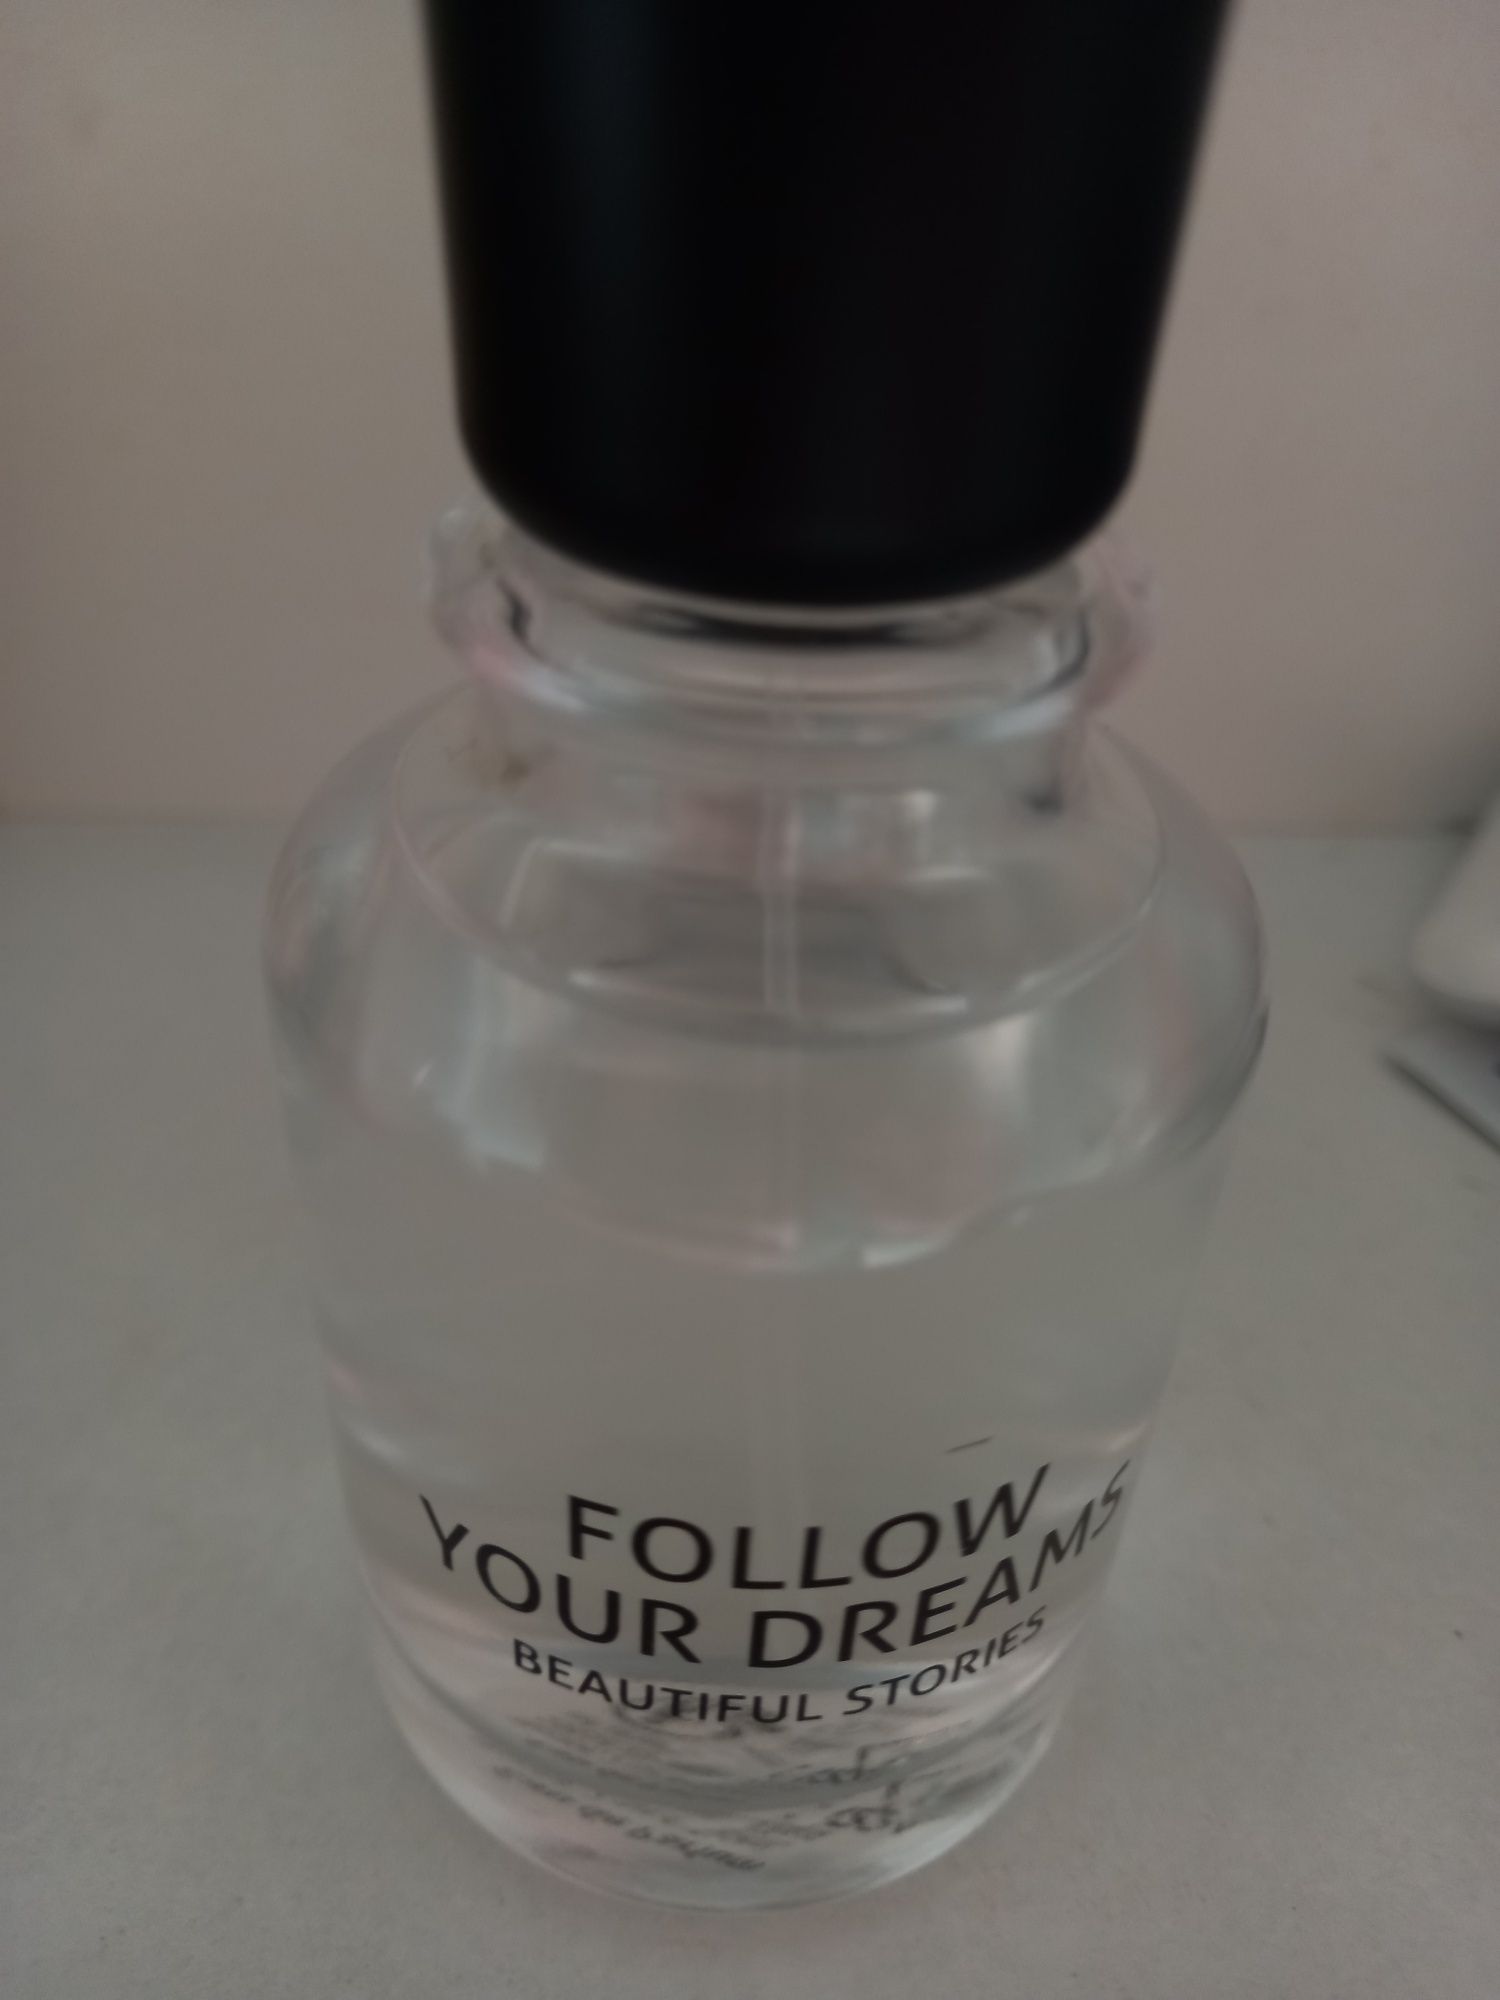 parfum Beautiful stories follow your dreams de la Douglas